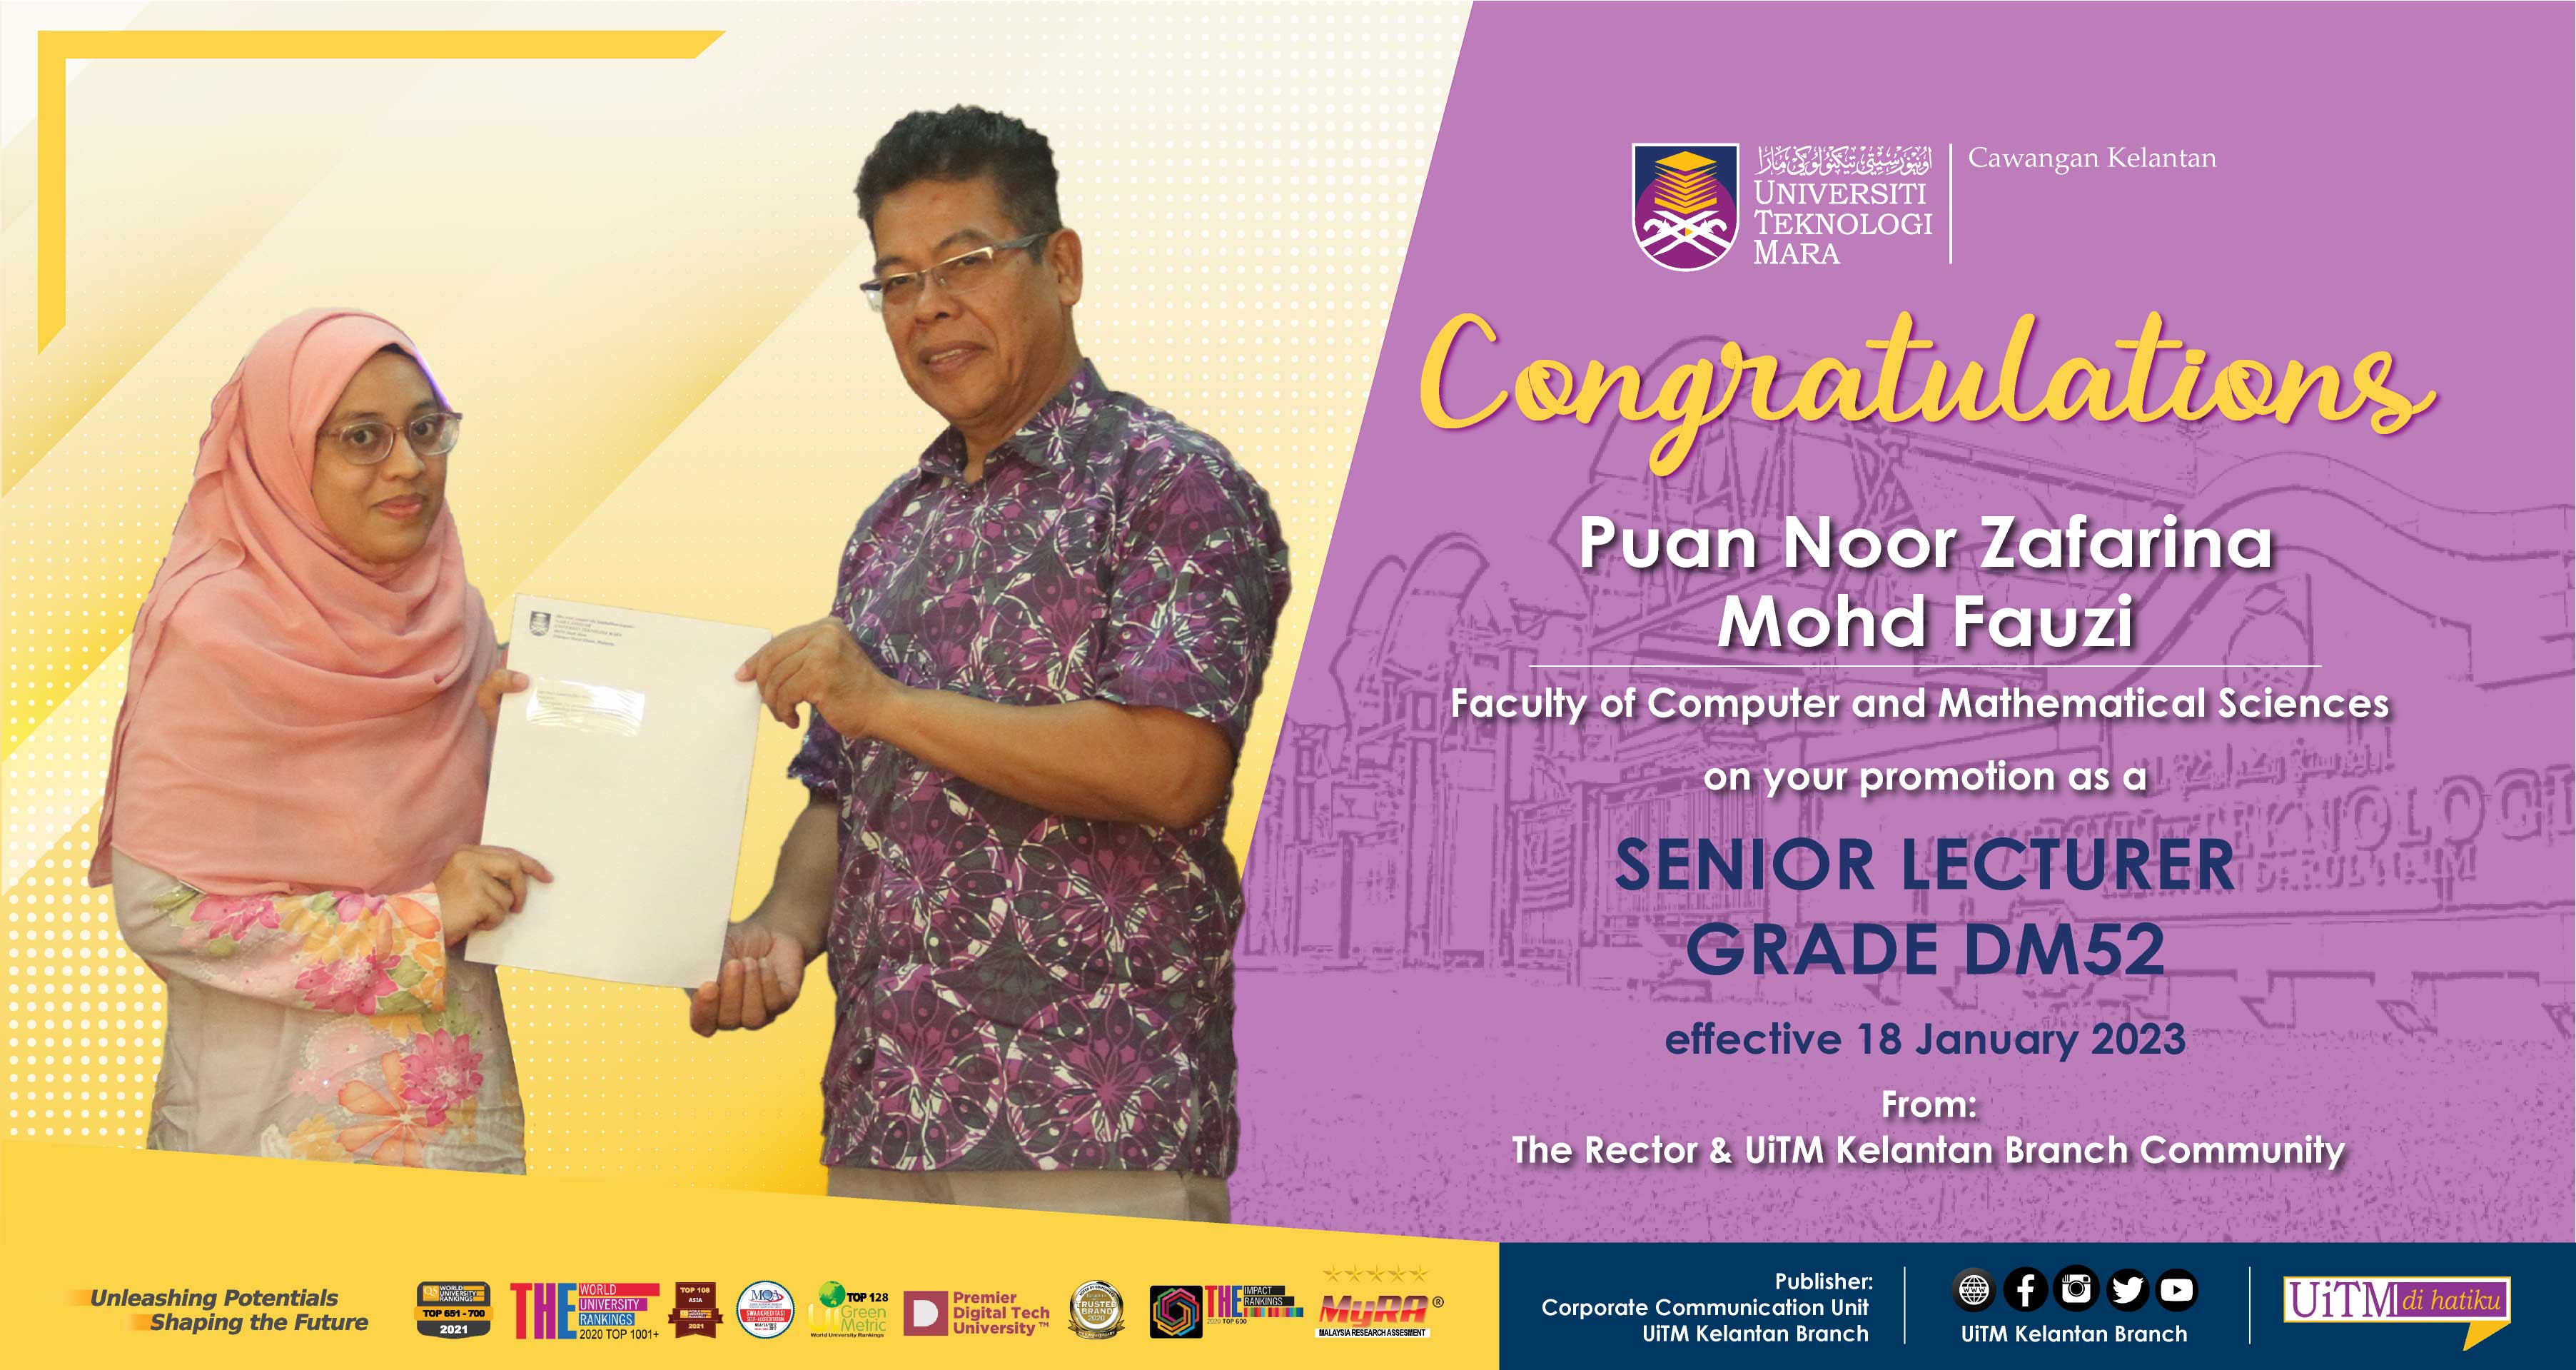 Congratulations!!! Puan Noor Zafarina Mohd Fauzi, Senior Lecturer Grade DM52